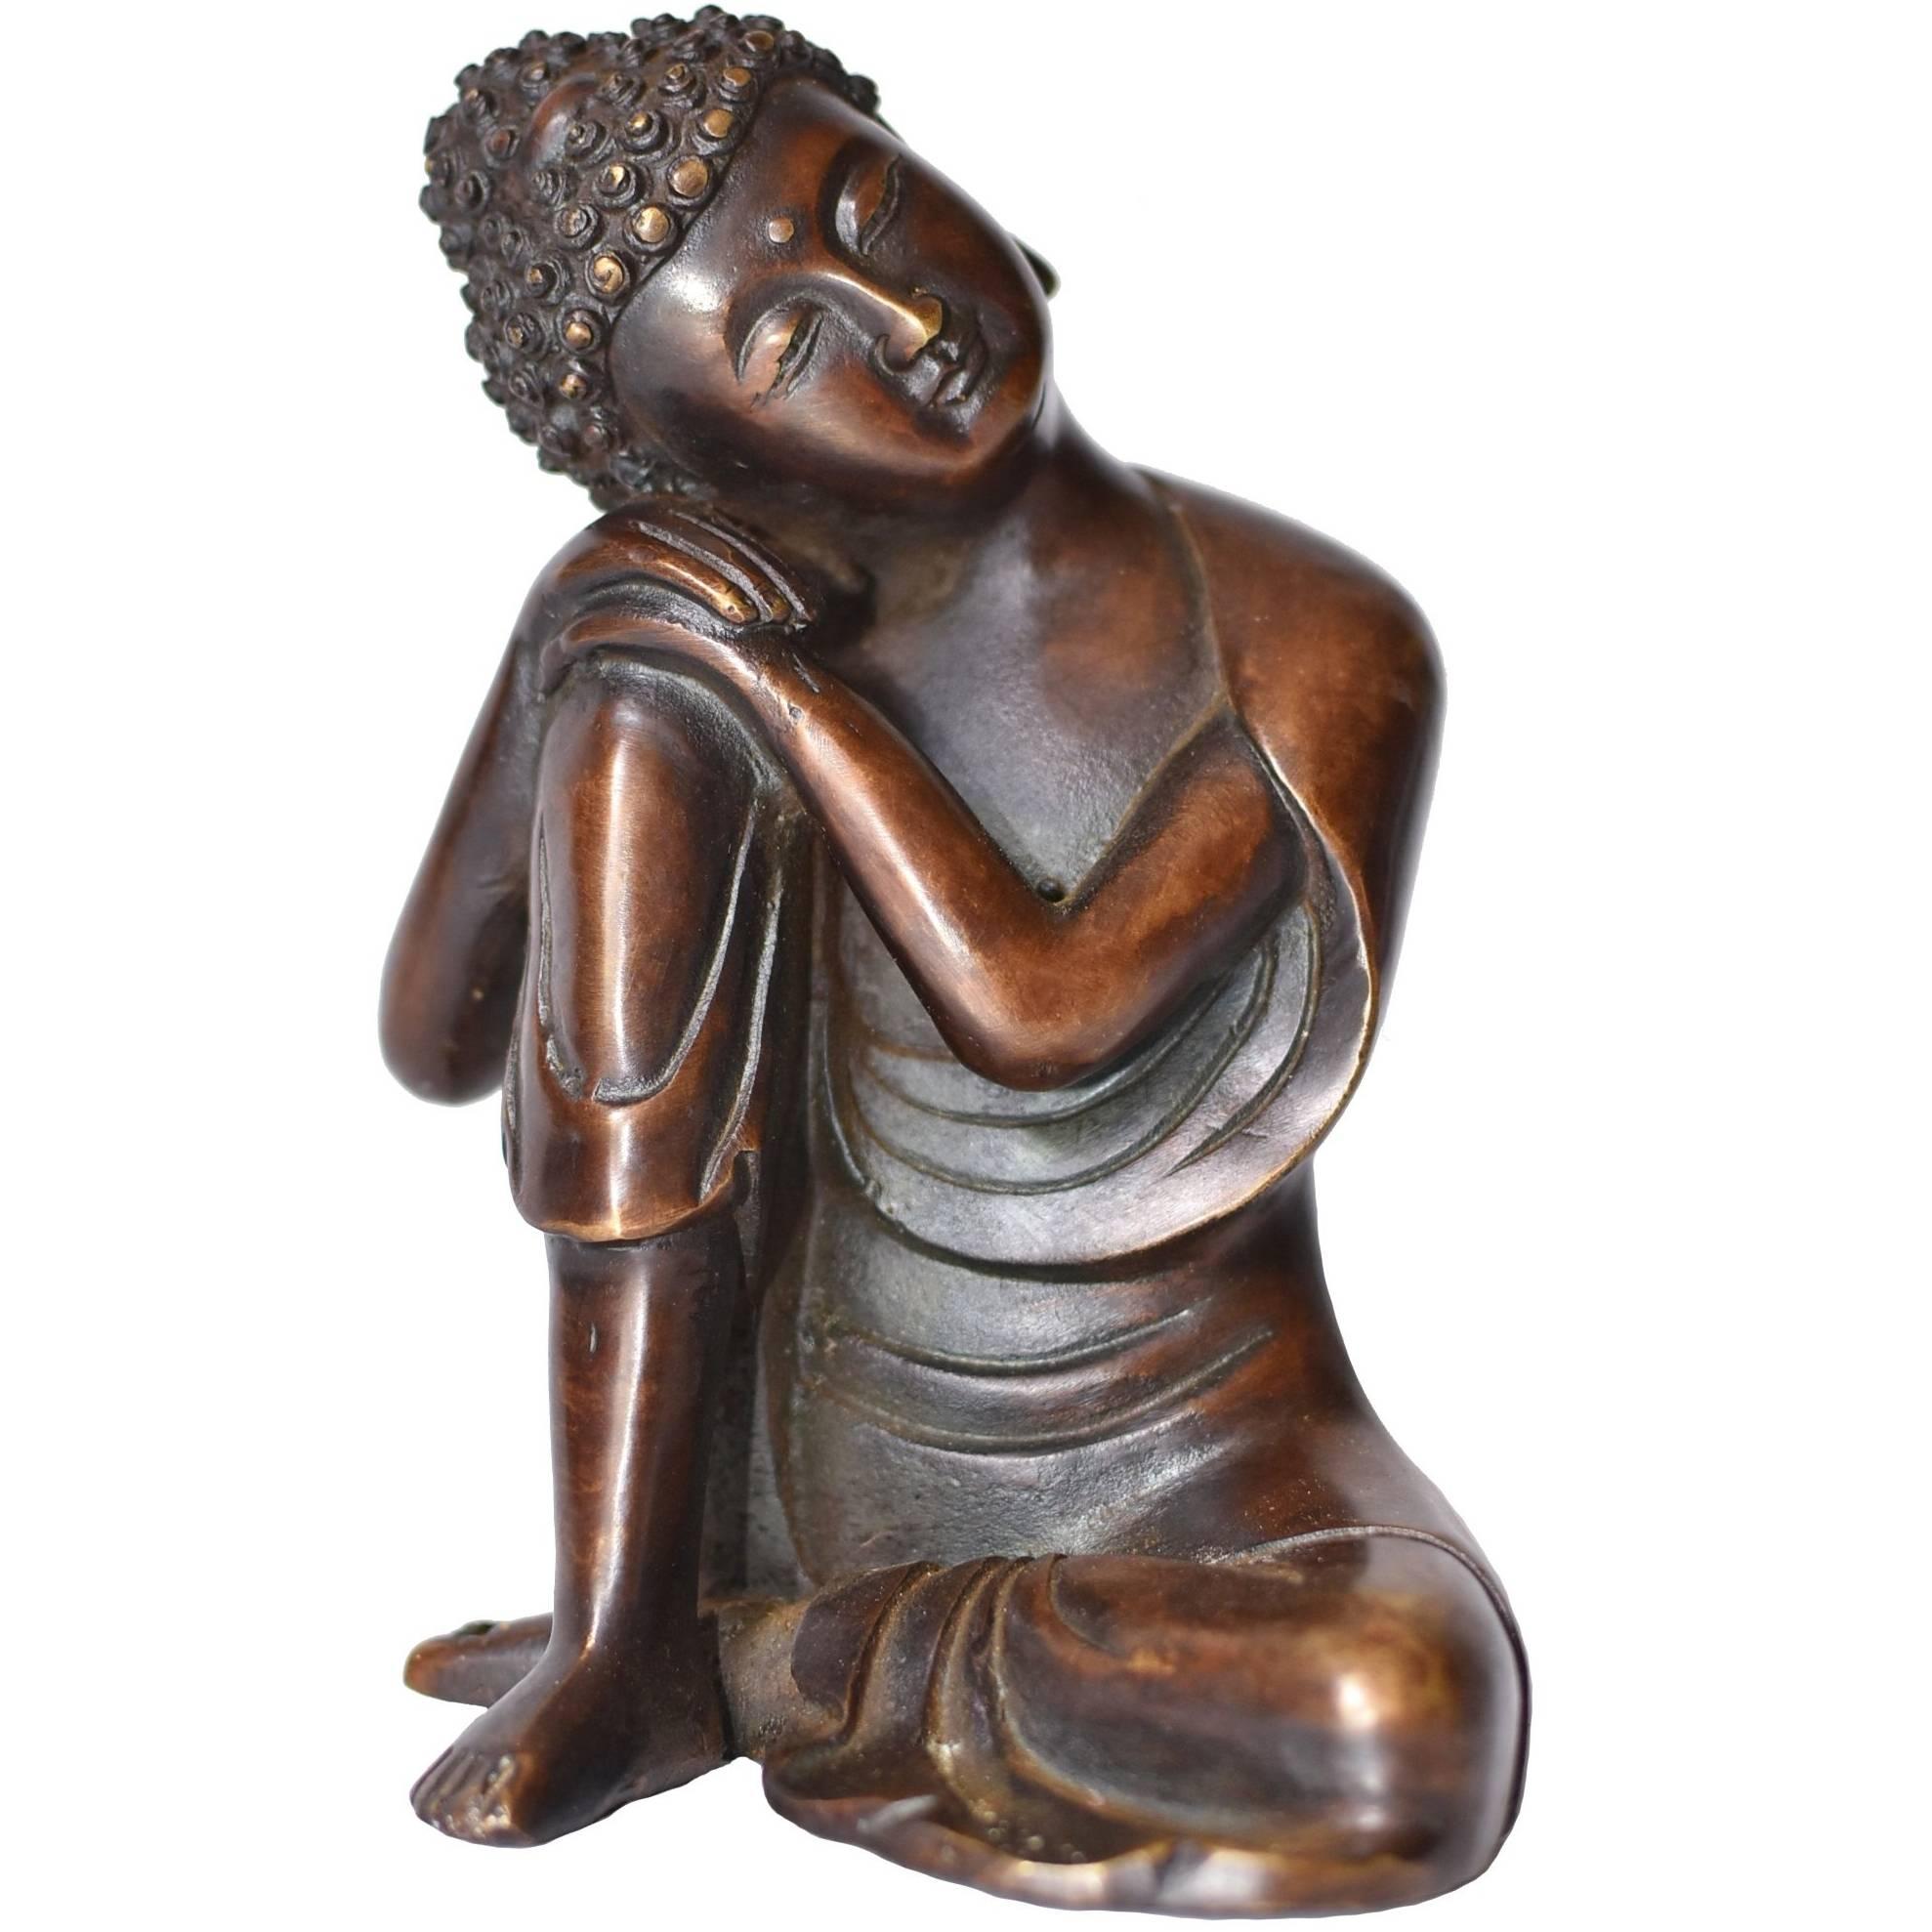 Bronze Buddha Statue, a Thinking Buddha